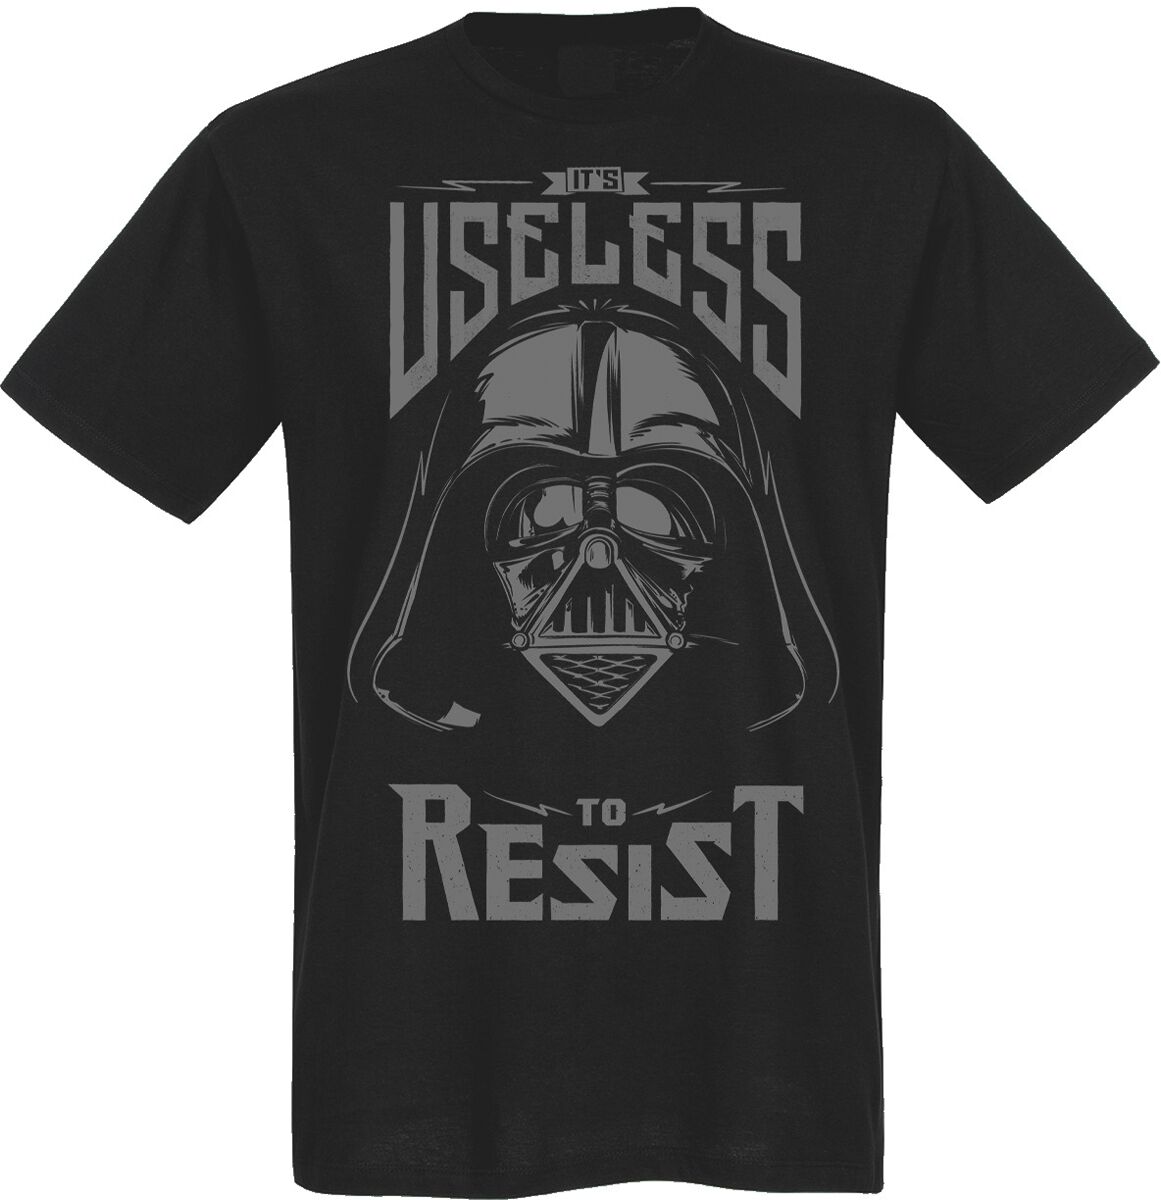 Star Wars - Disney T-Shirt - Useless To Resist - M bis 5XL - für Männer - Größe 4XL - schwarz  - Lizenzierter Fanartikel